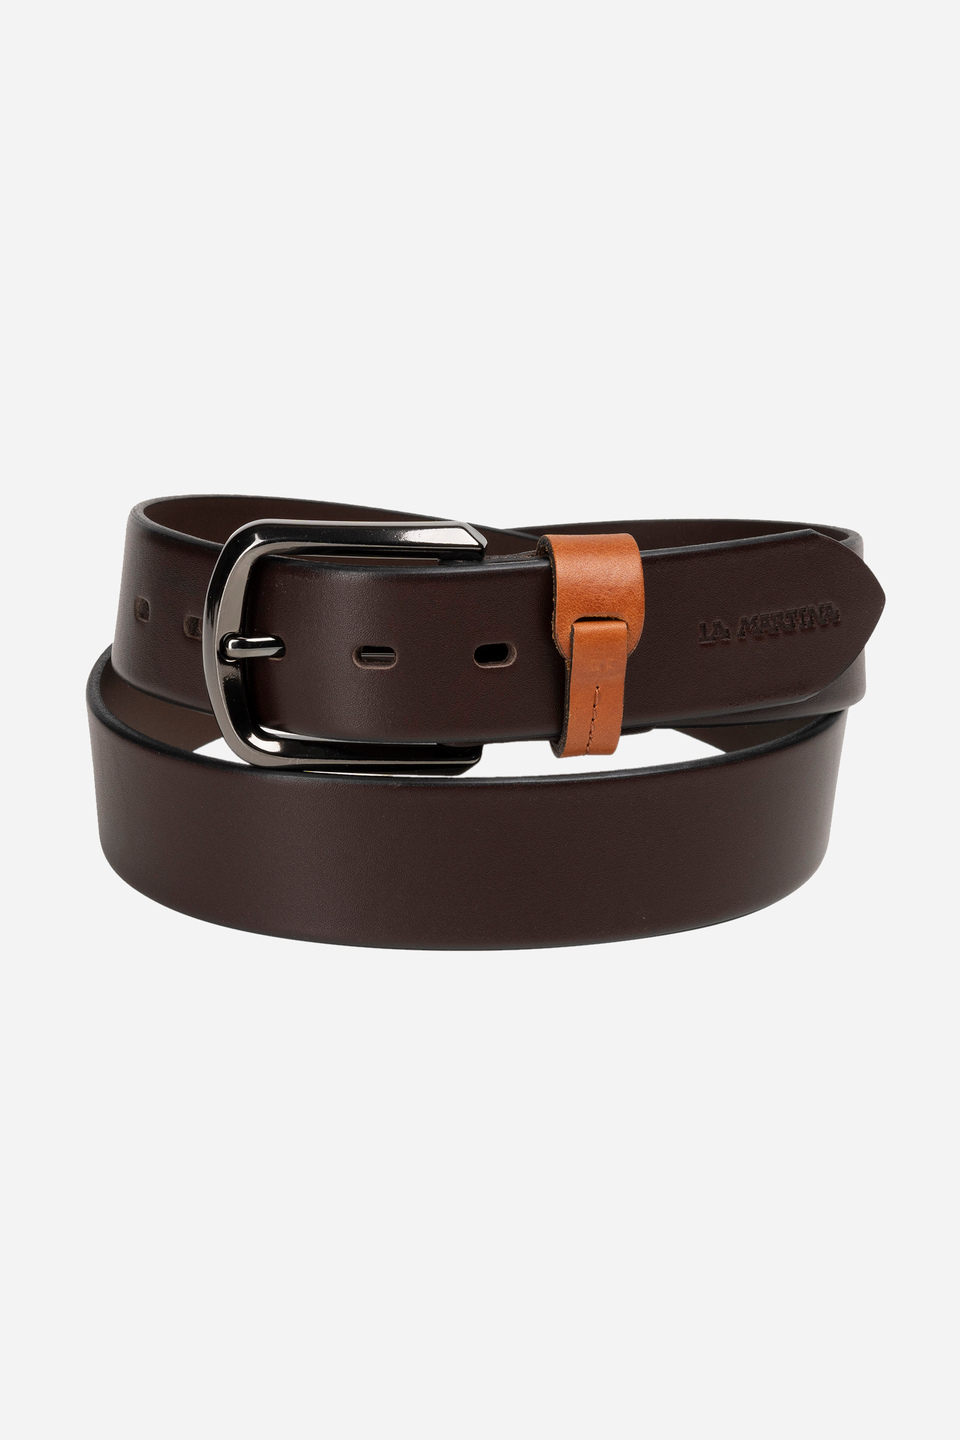 Men's belt in shiny leather | La Martina - Official Online Shop